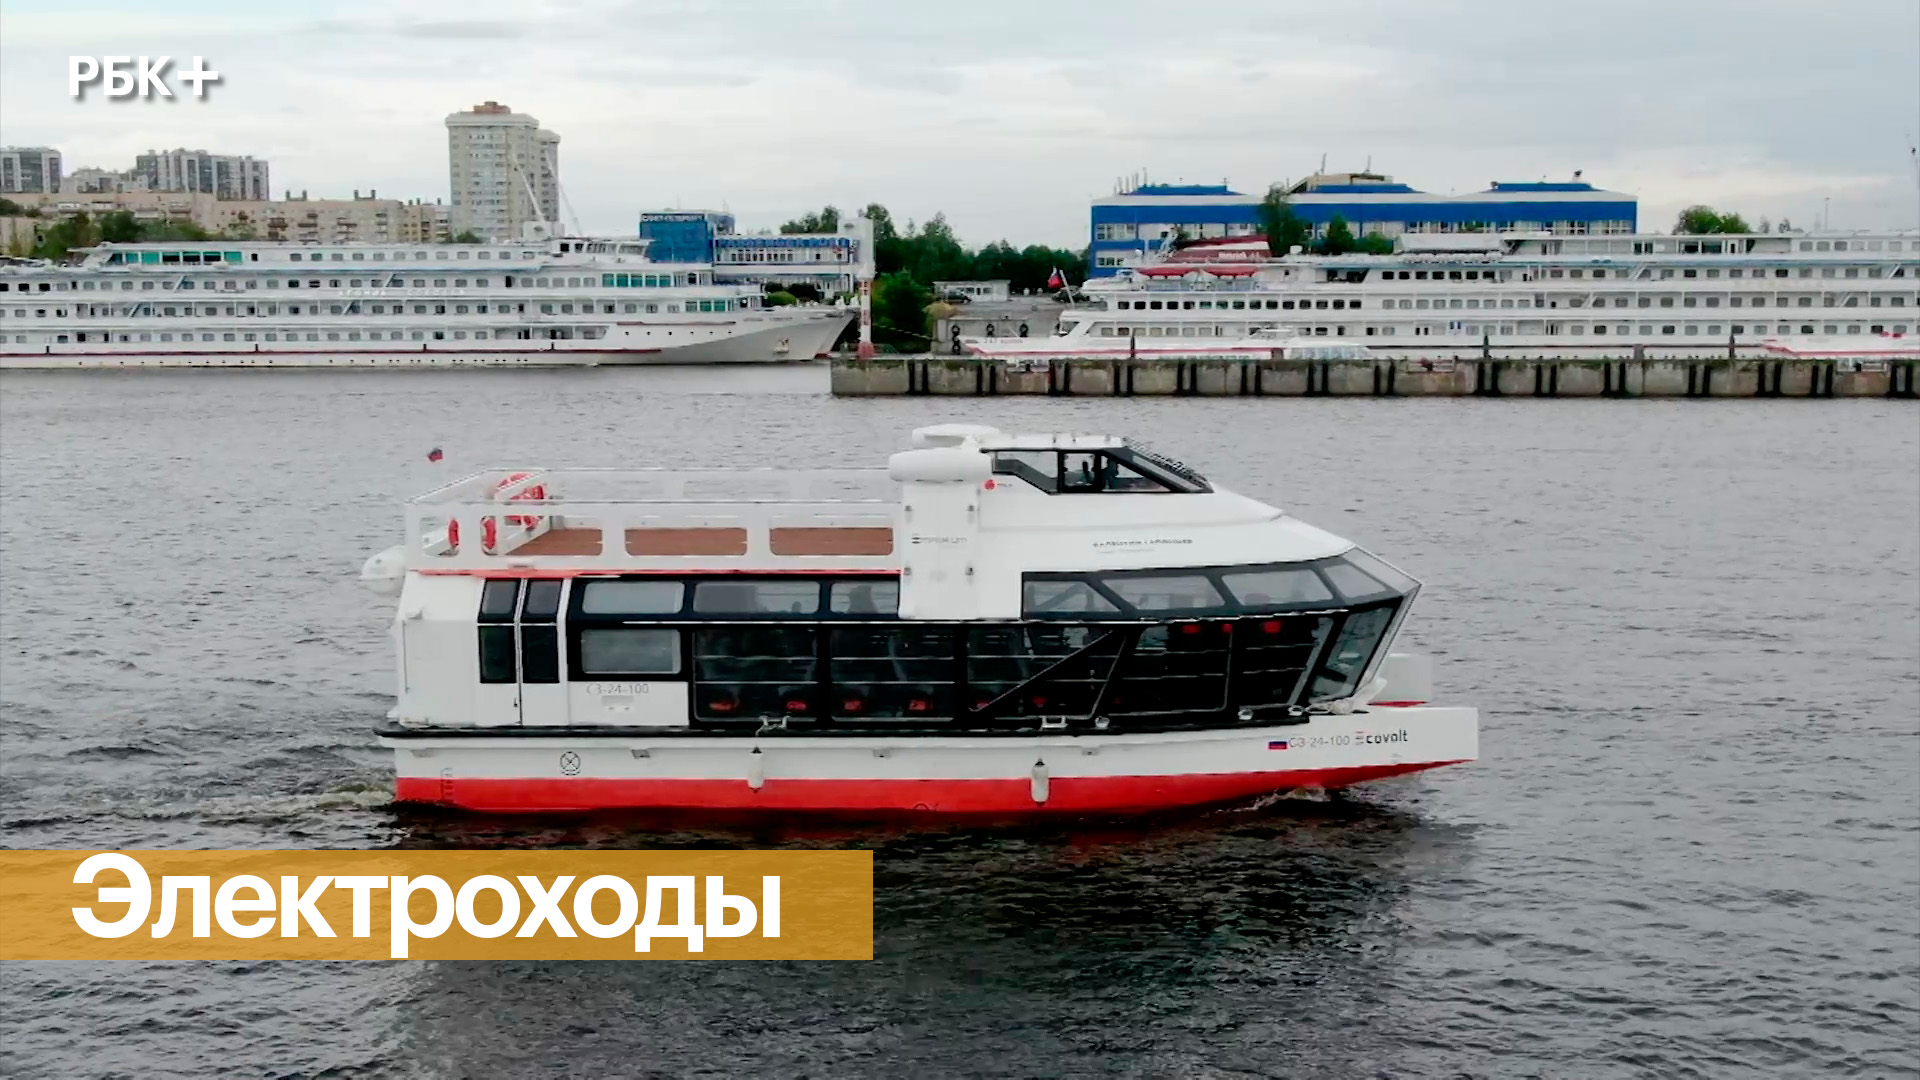 Российский флот судов на электротяге